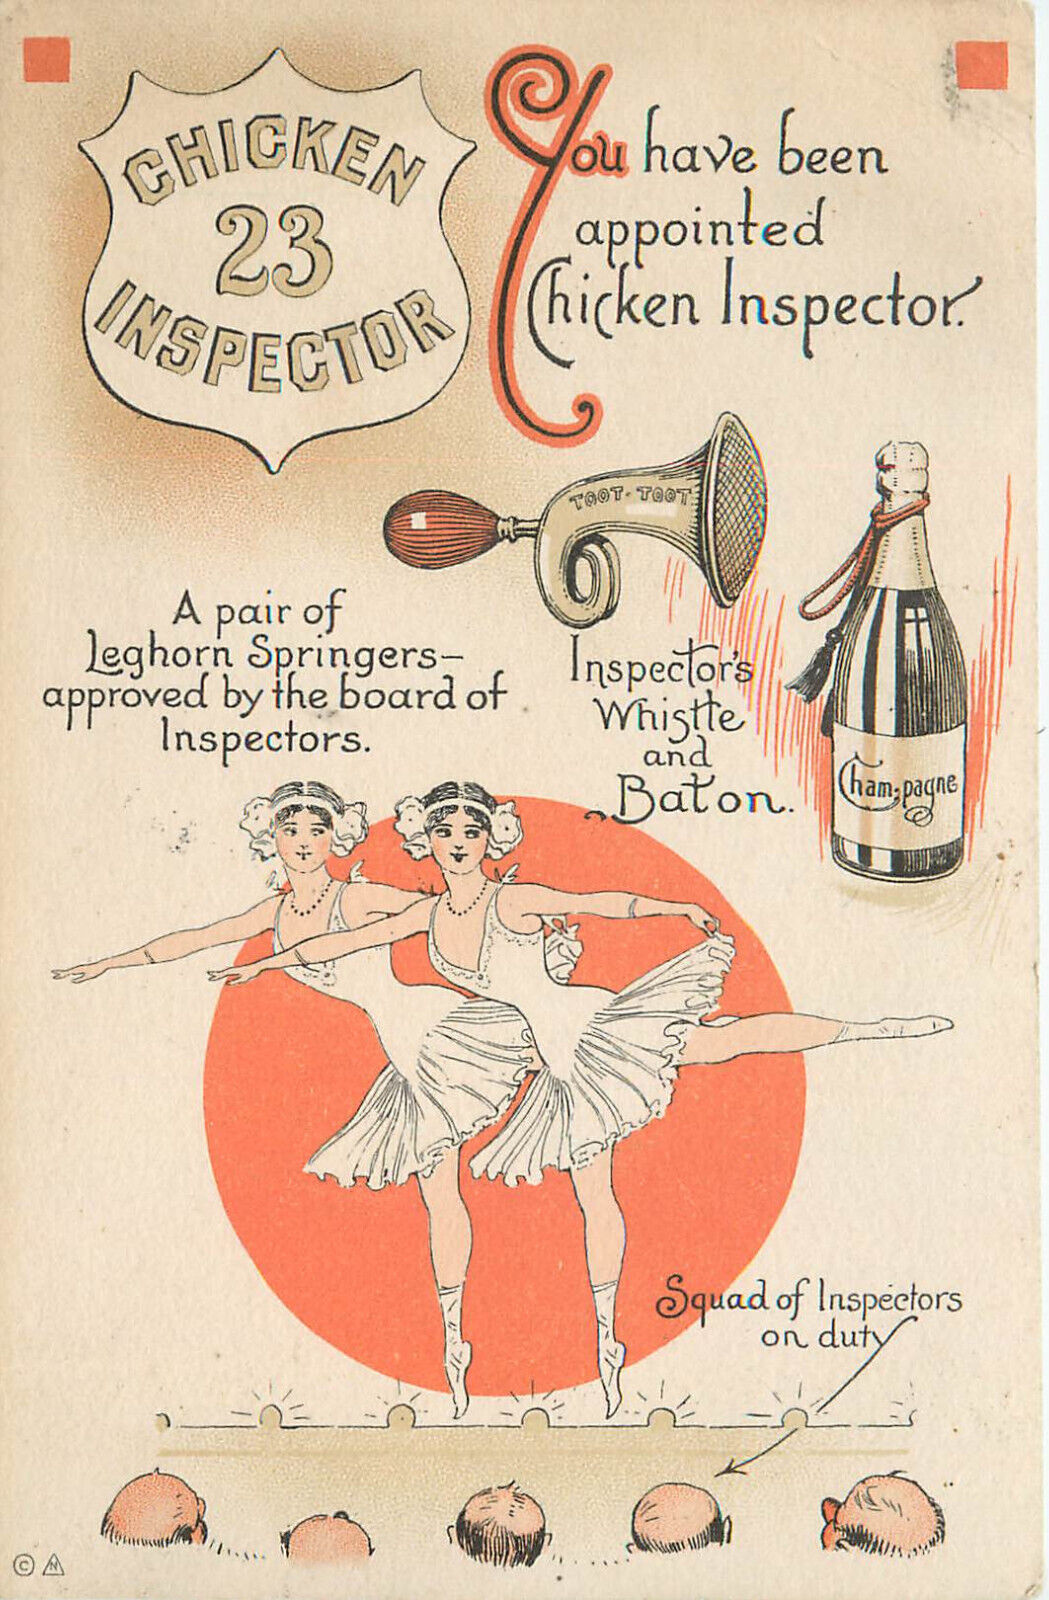 Chicken Inspector Postcard 23 Skidoo Humor Men Leer at Dancers Legs 107